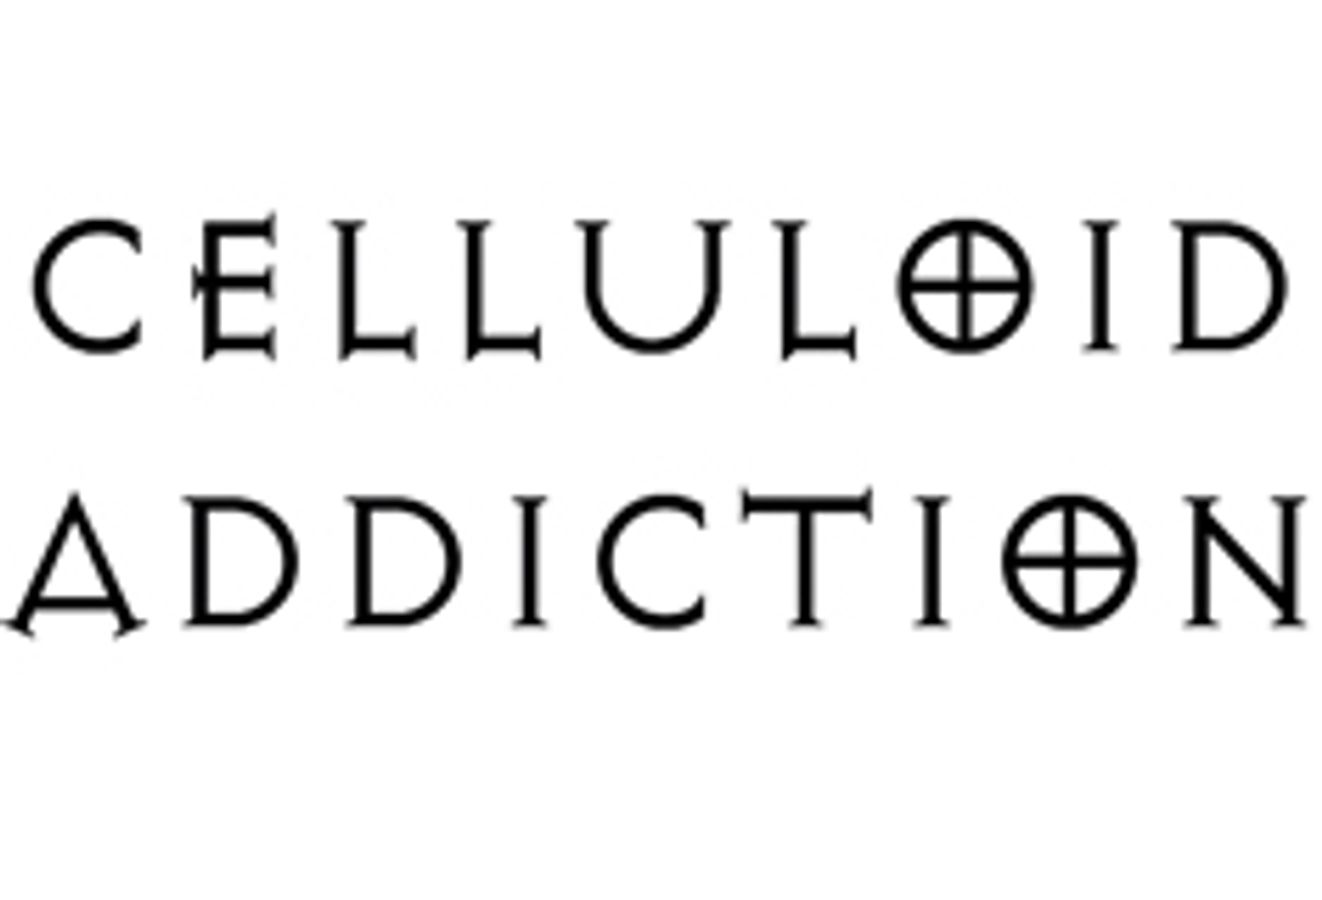 Celluloid Addiction